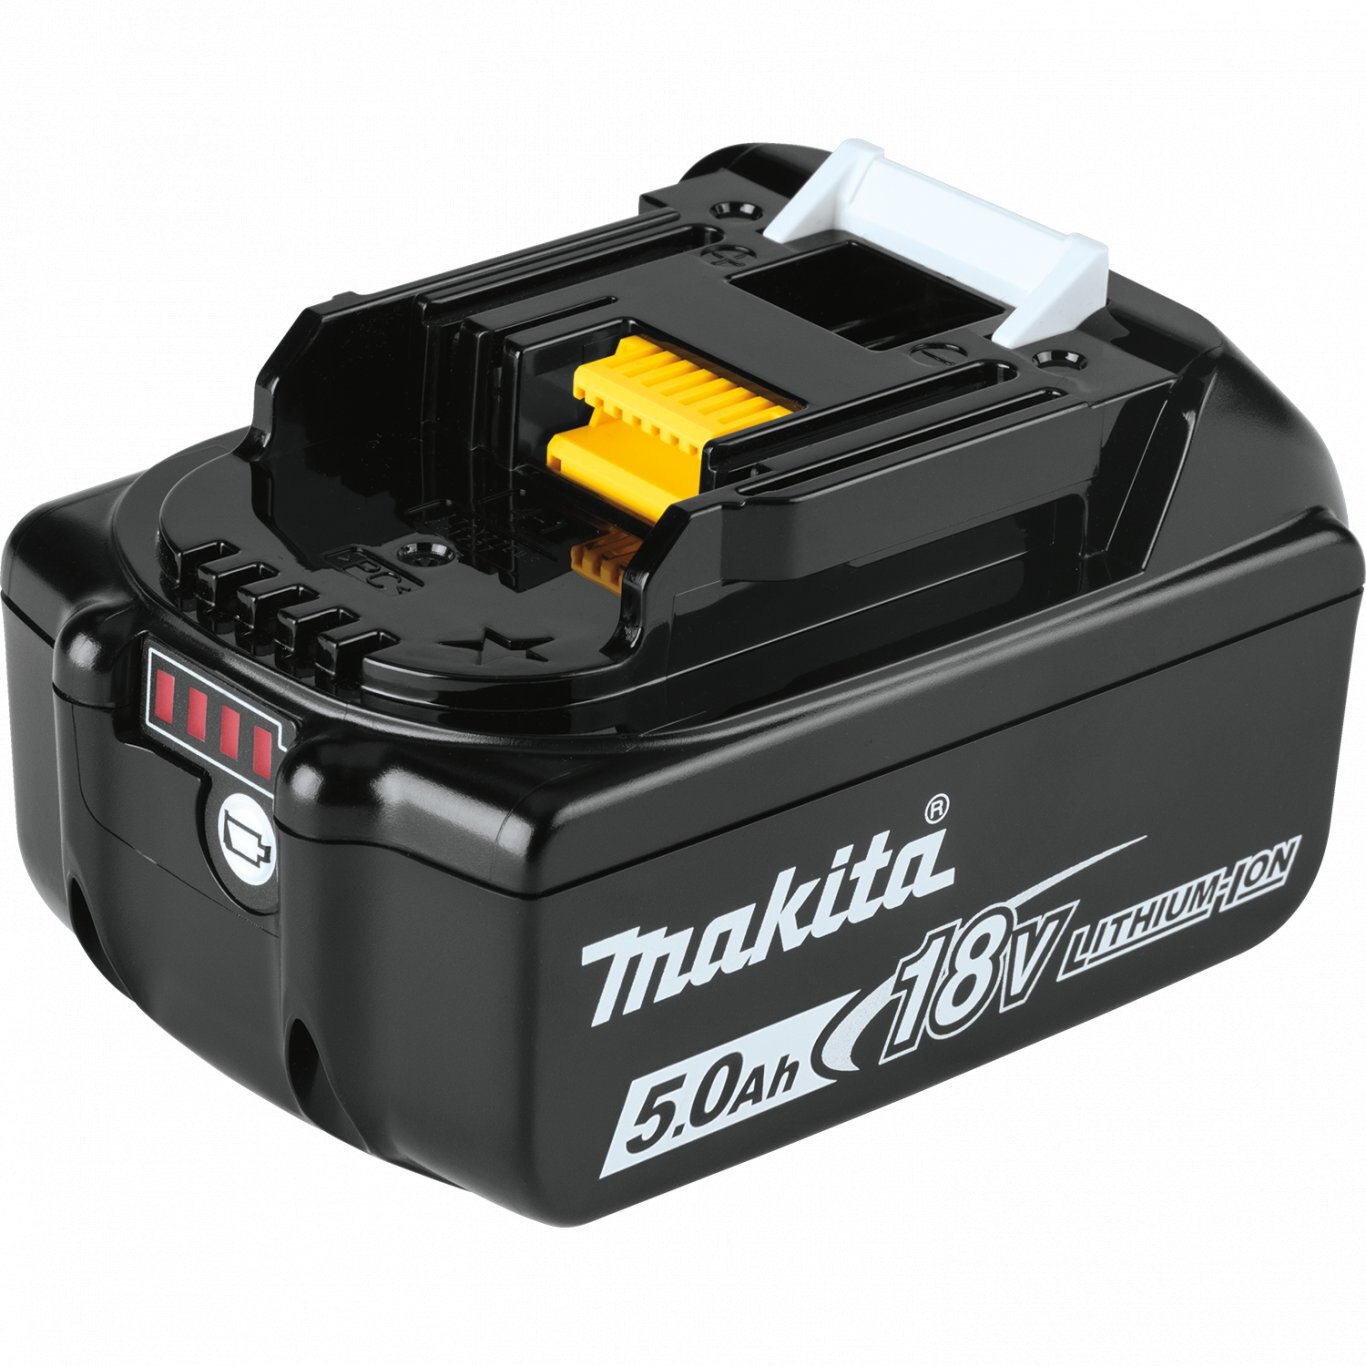 Makita 36V (18V X2) LXT® Brushless Blower Kit with 4 Batteries (5.0Ah)